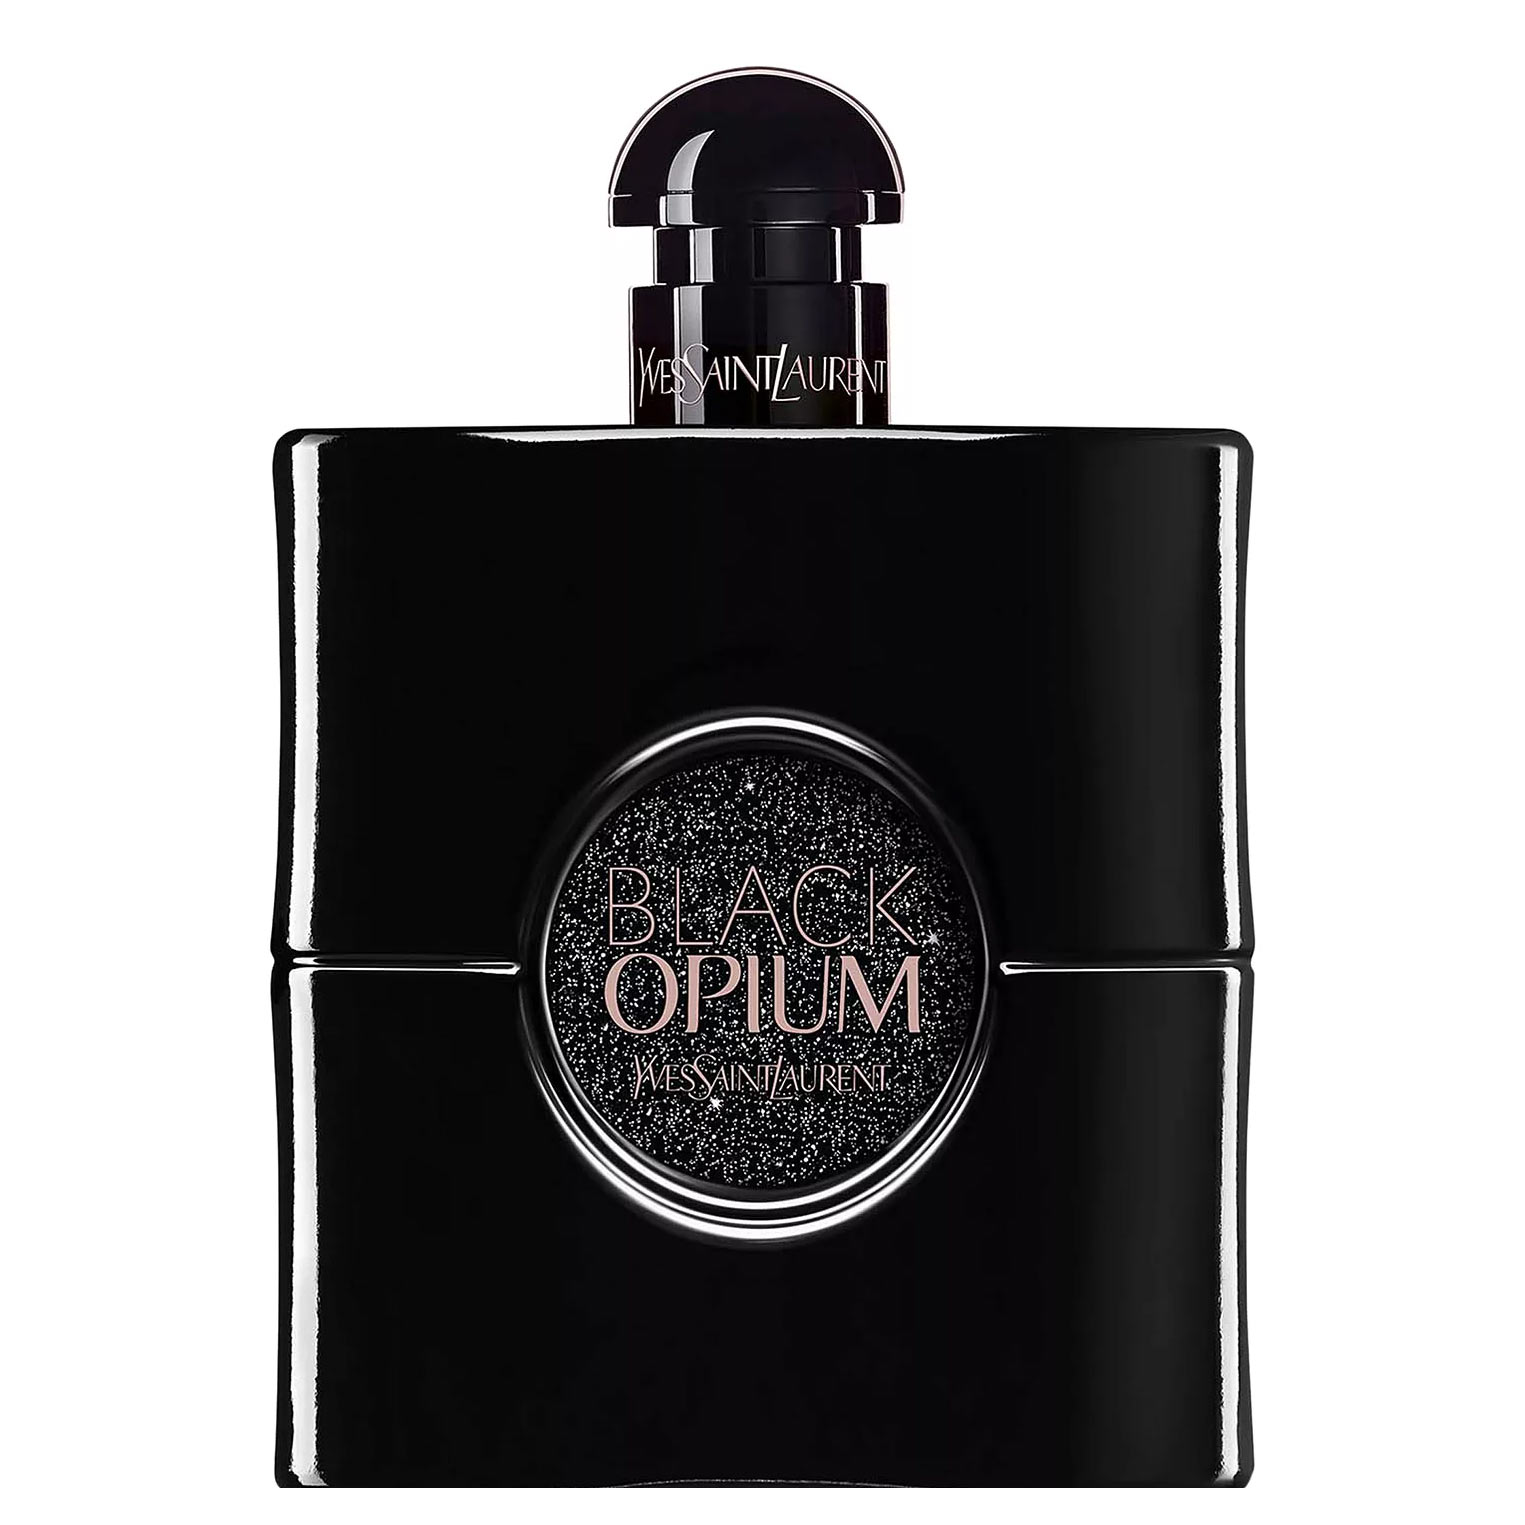 Black Opium Le Parfum Yves Saint Laurent Image